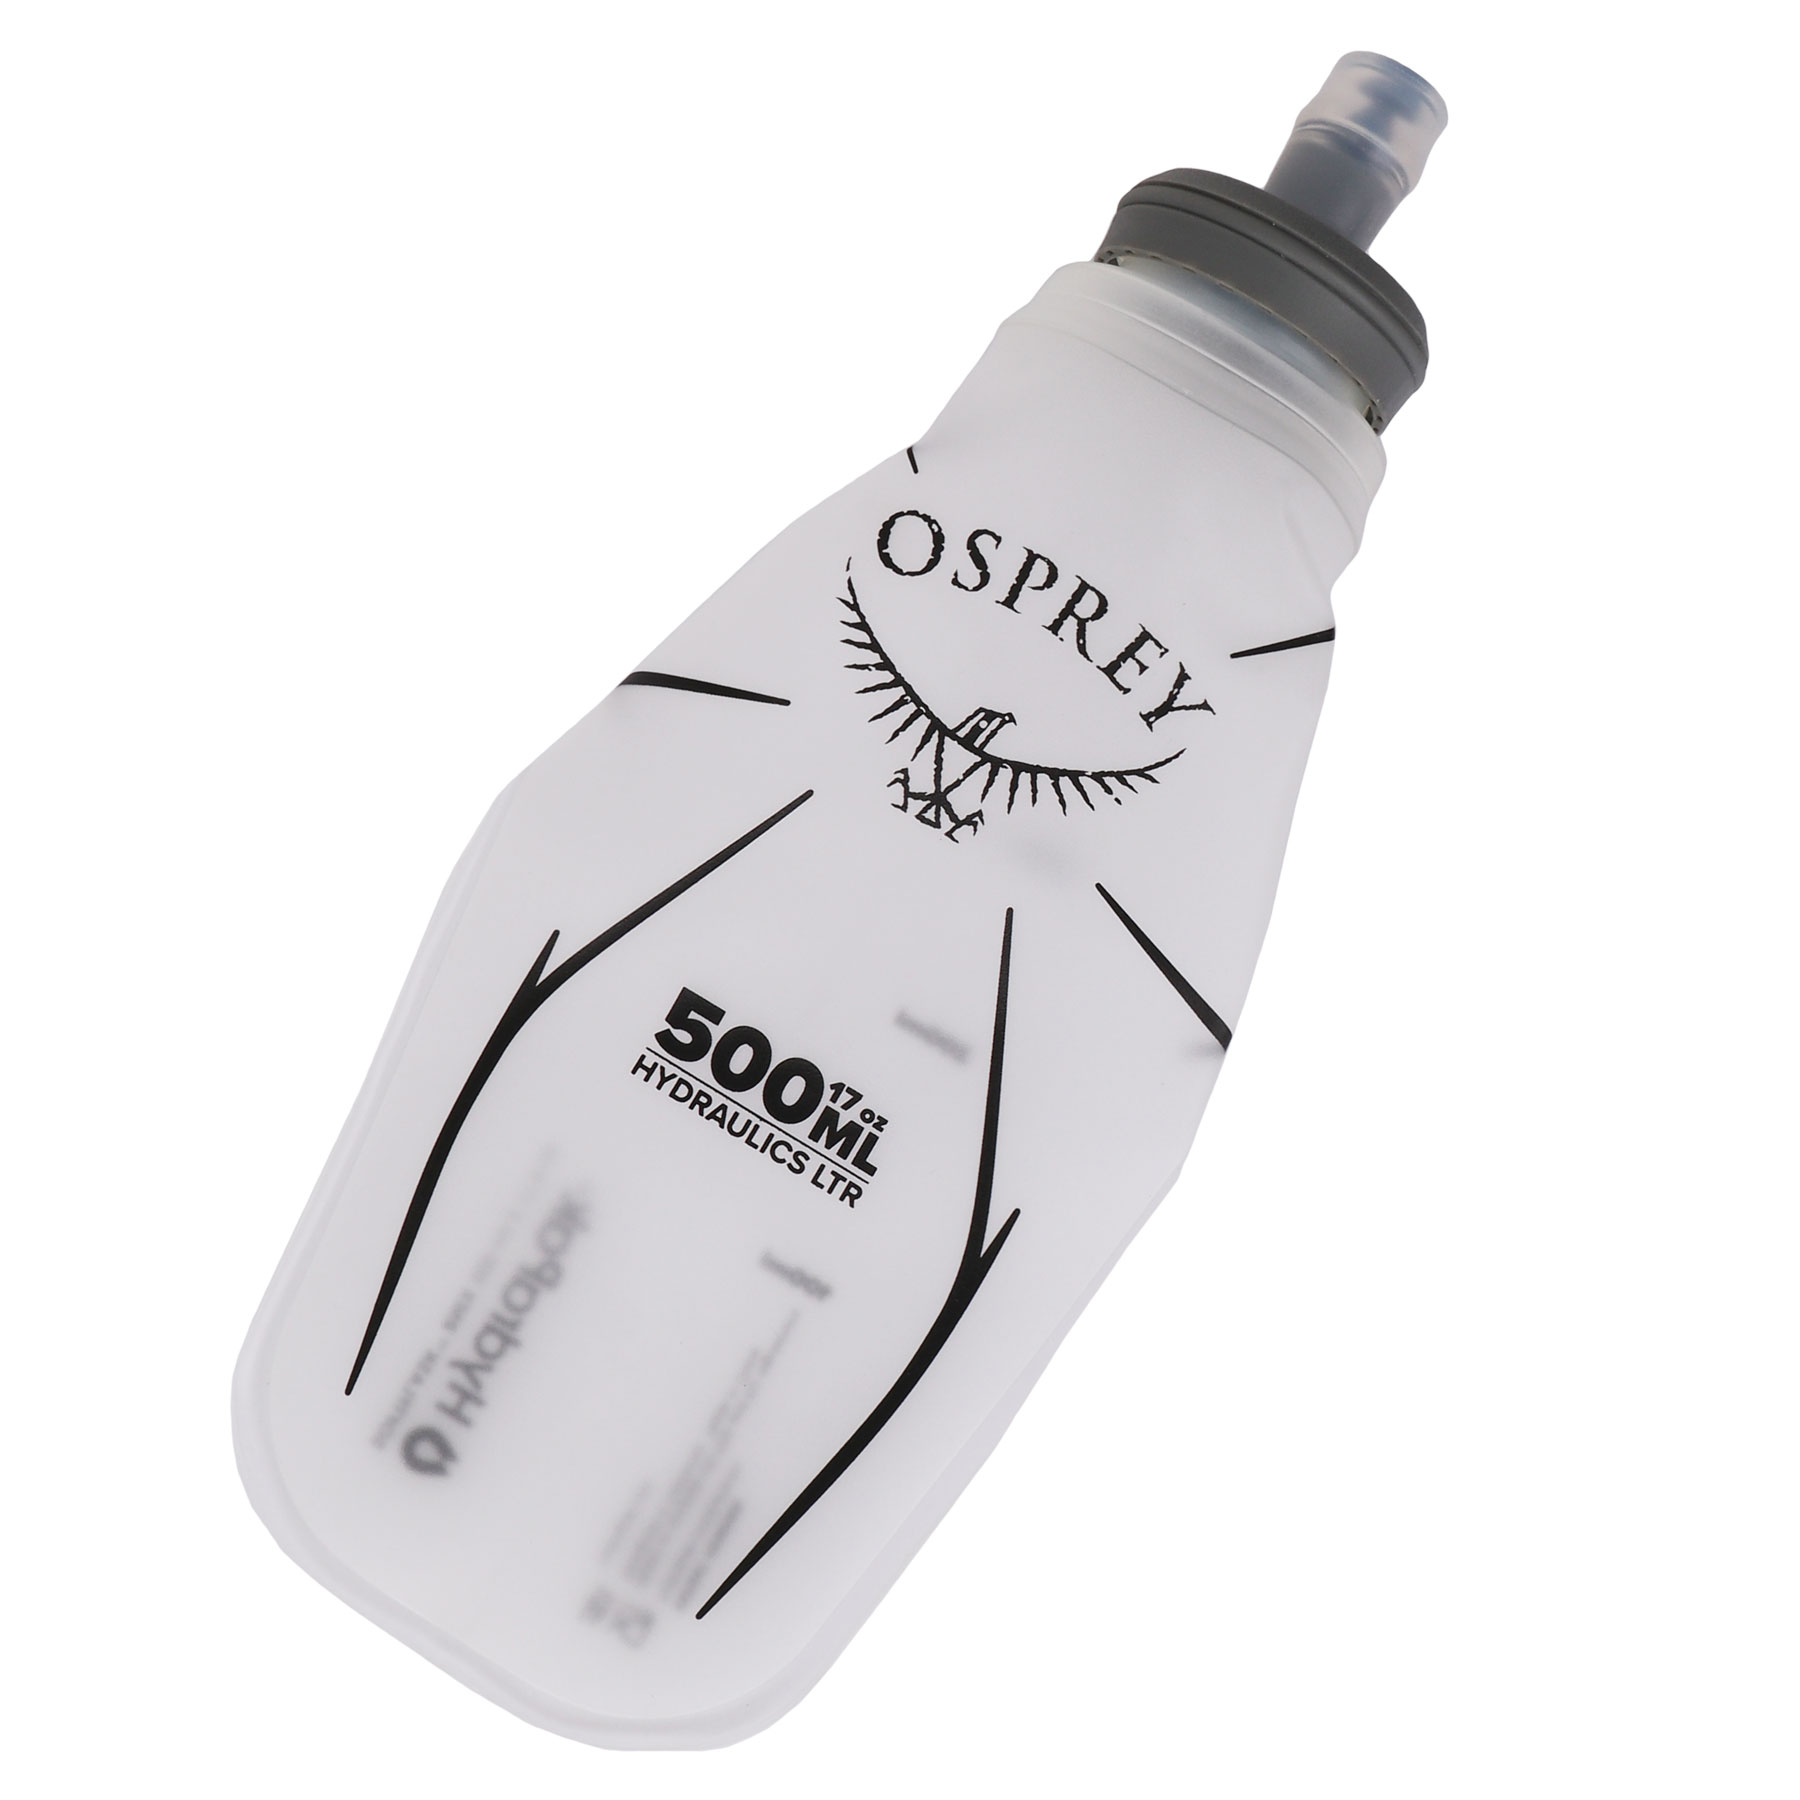 Produktbild von Osprey Hydraulics Soft Flask - Trinkflasche - 500ml